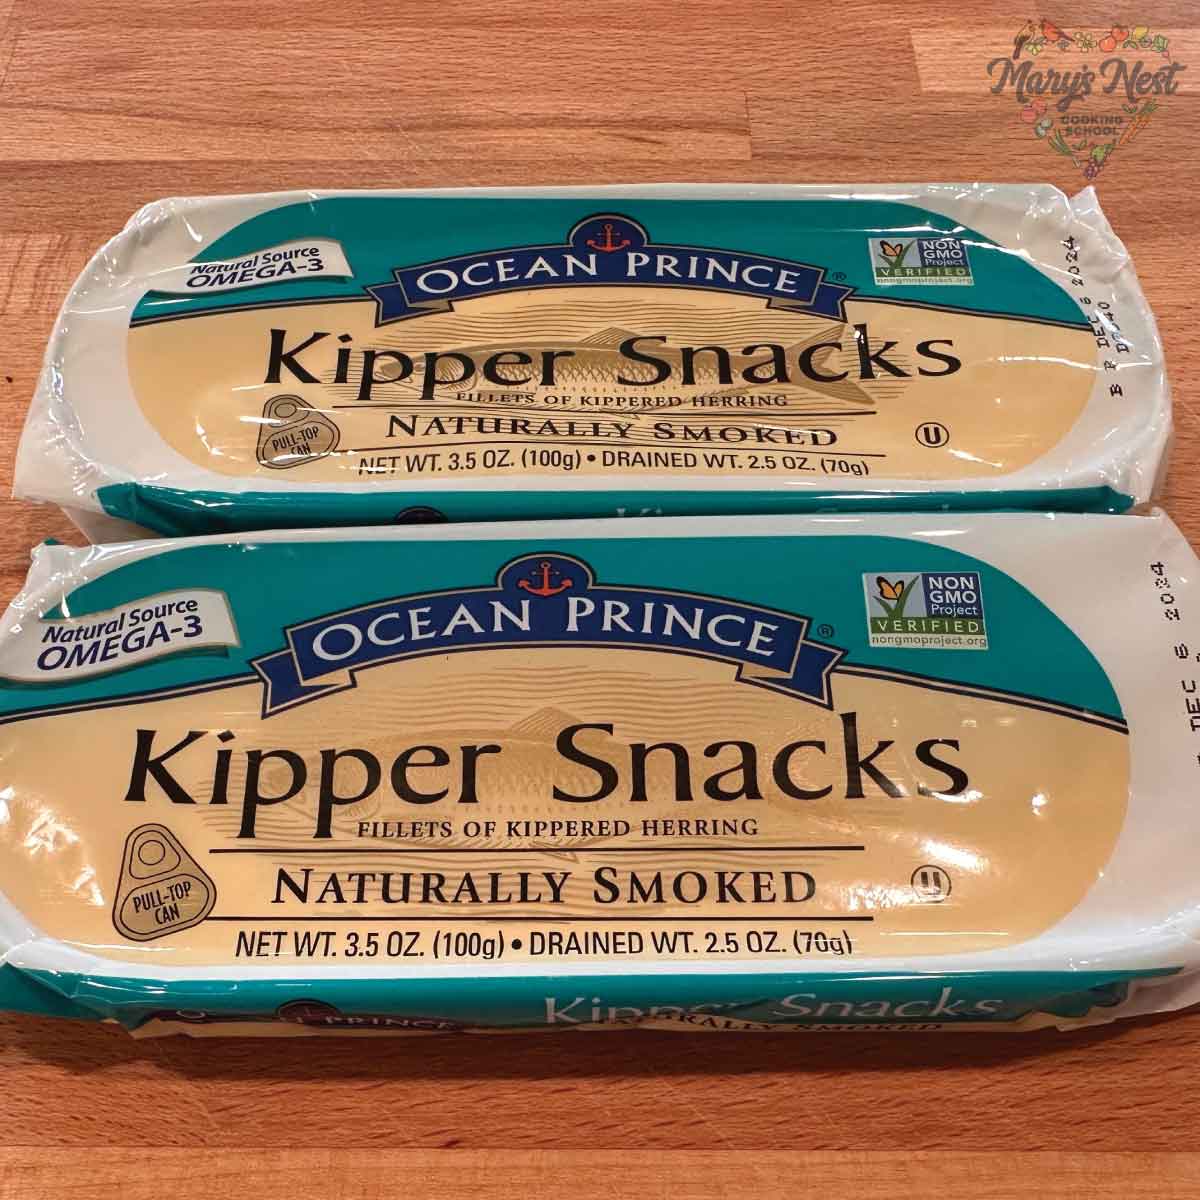 Showing 2 Ocean Prince Kipper Snacks